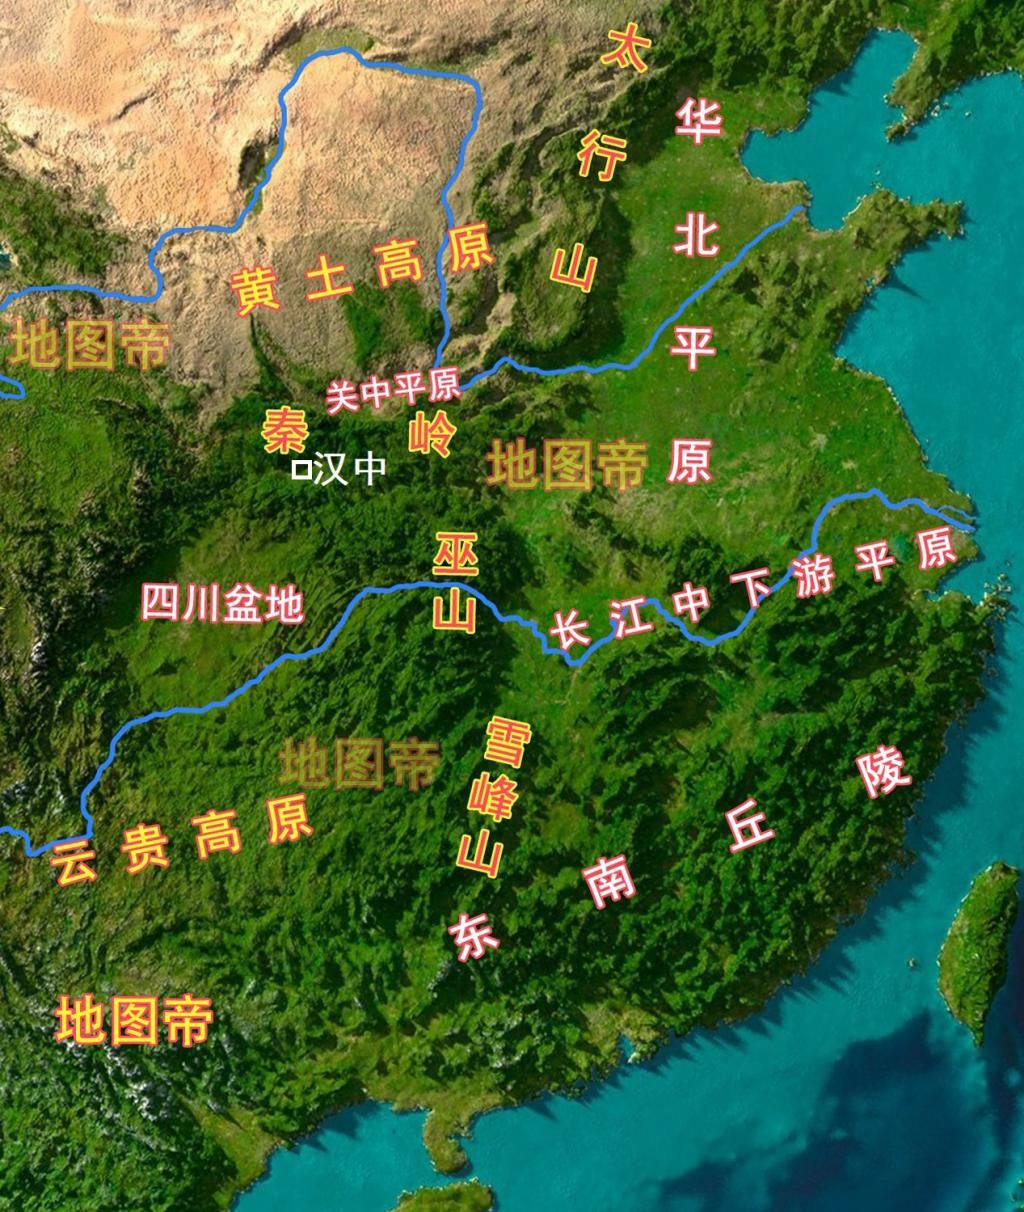 图-汉中位置及周边地形示意图